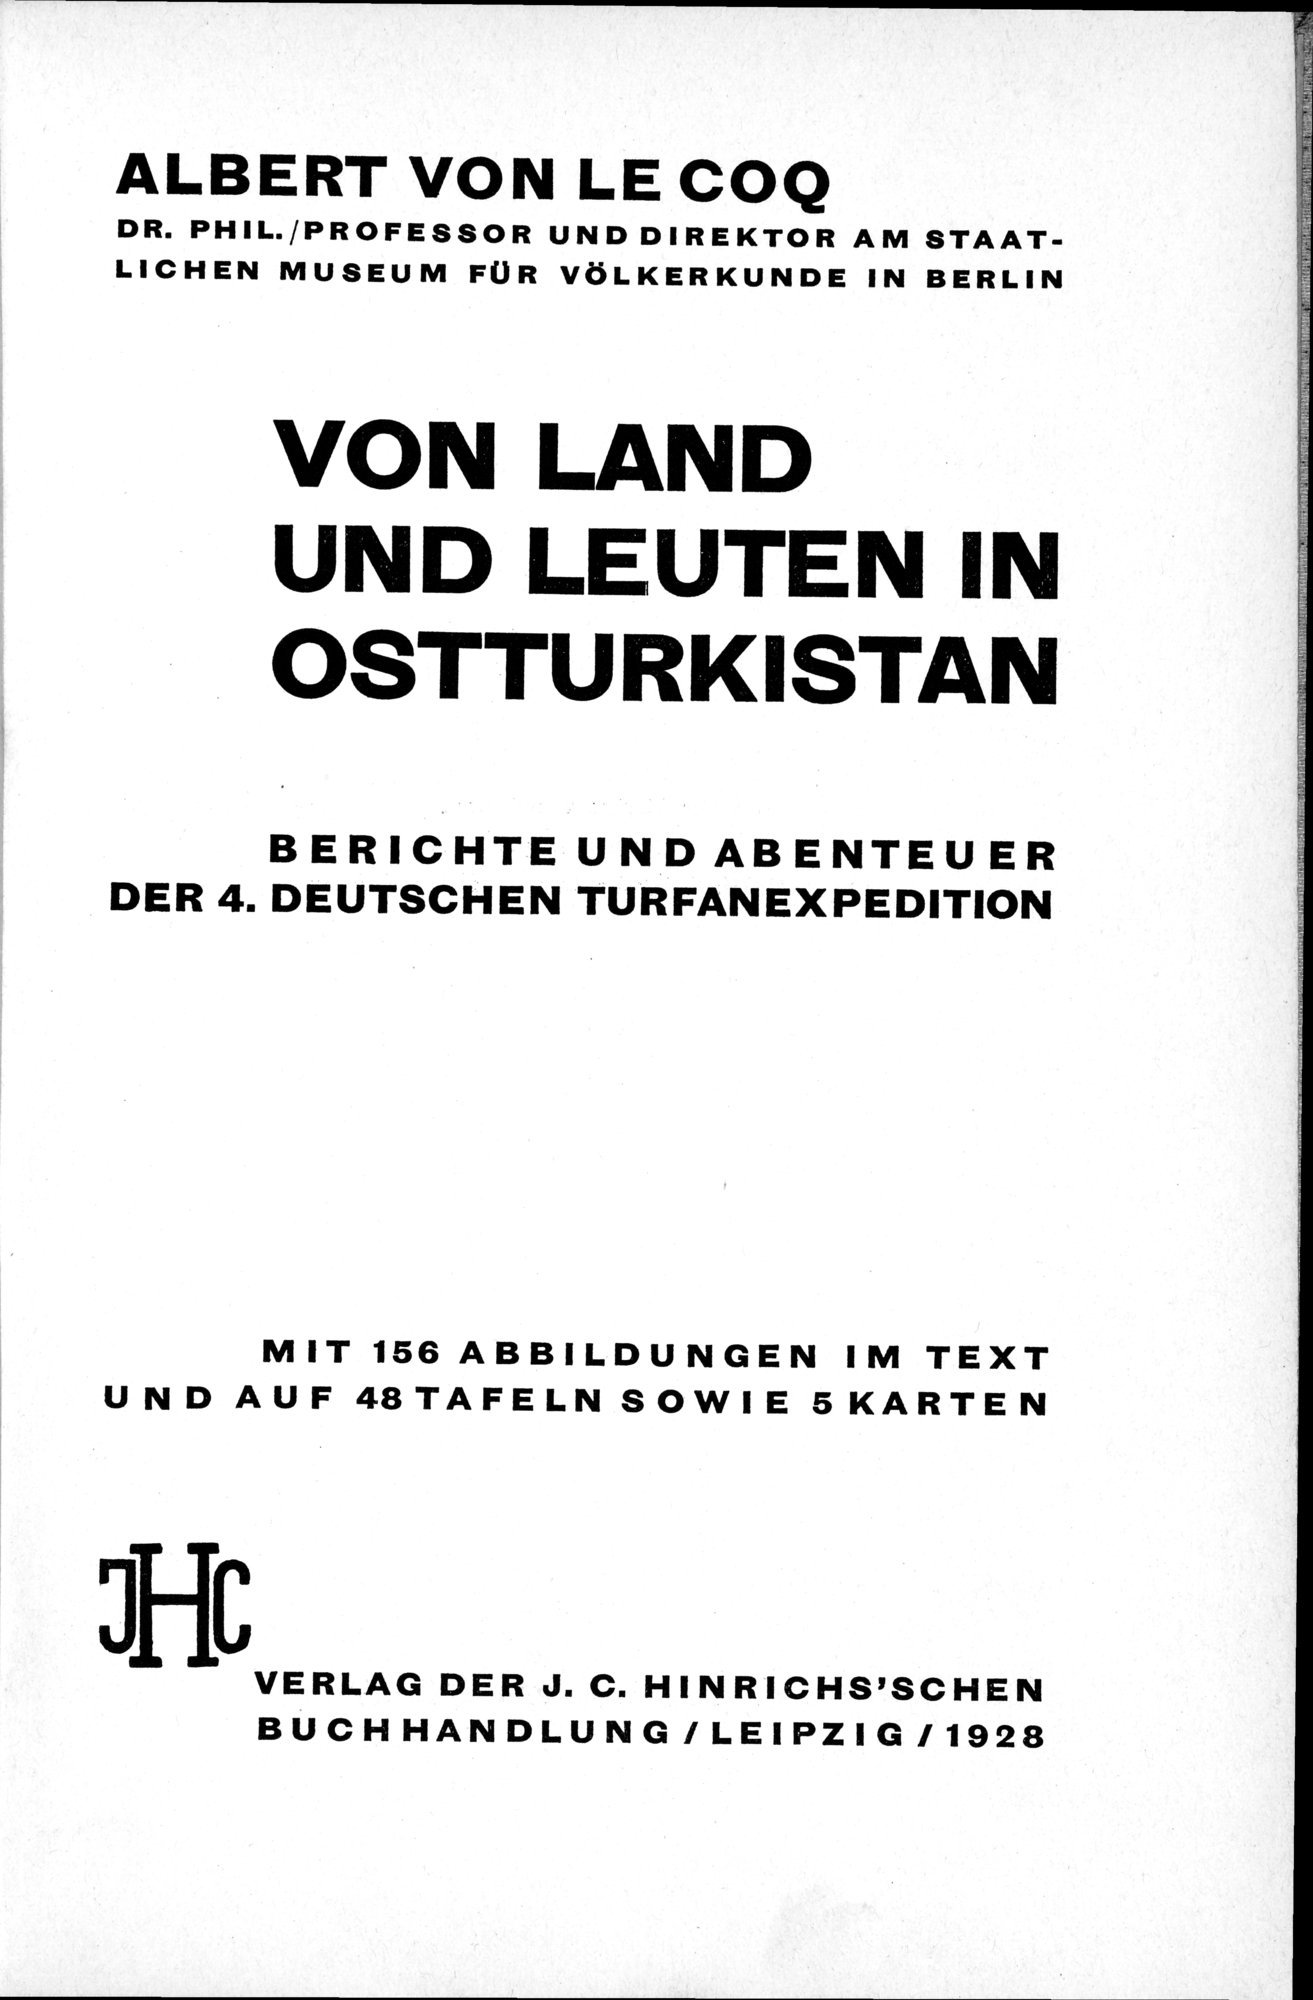 Von Land und Leuten in Ostturkistan : vol.1 / Page 5 (Grayscale High Resolution Image)